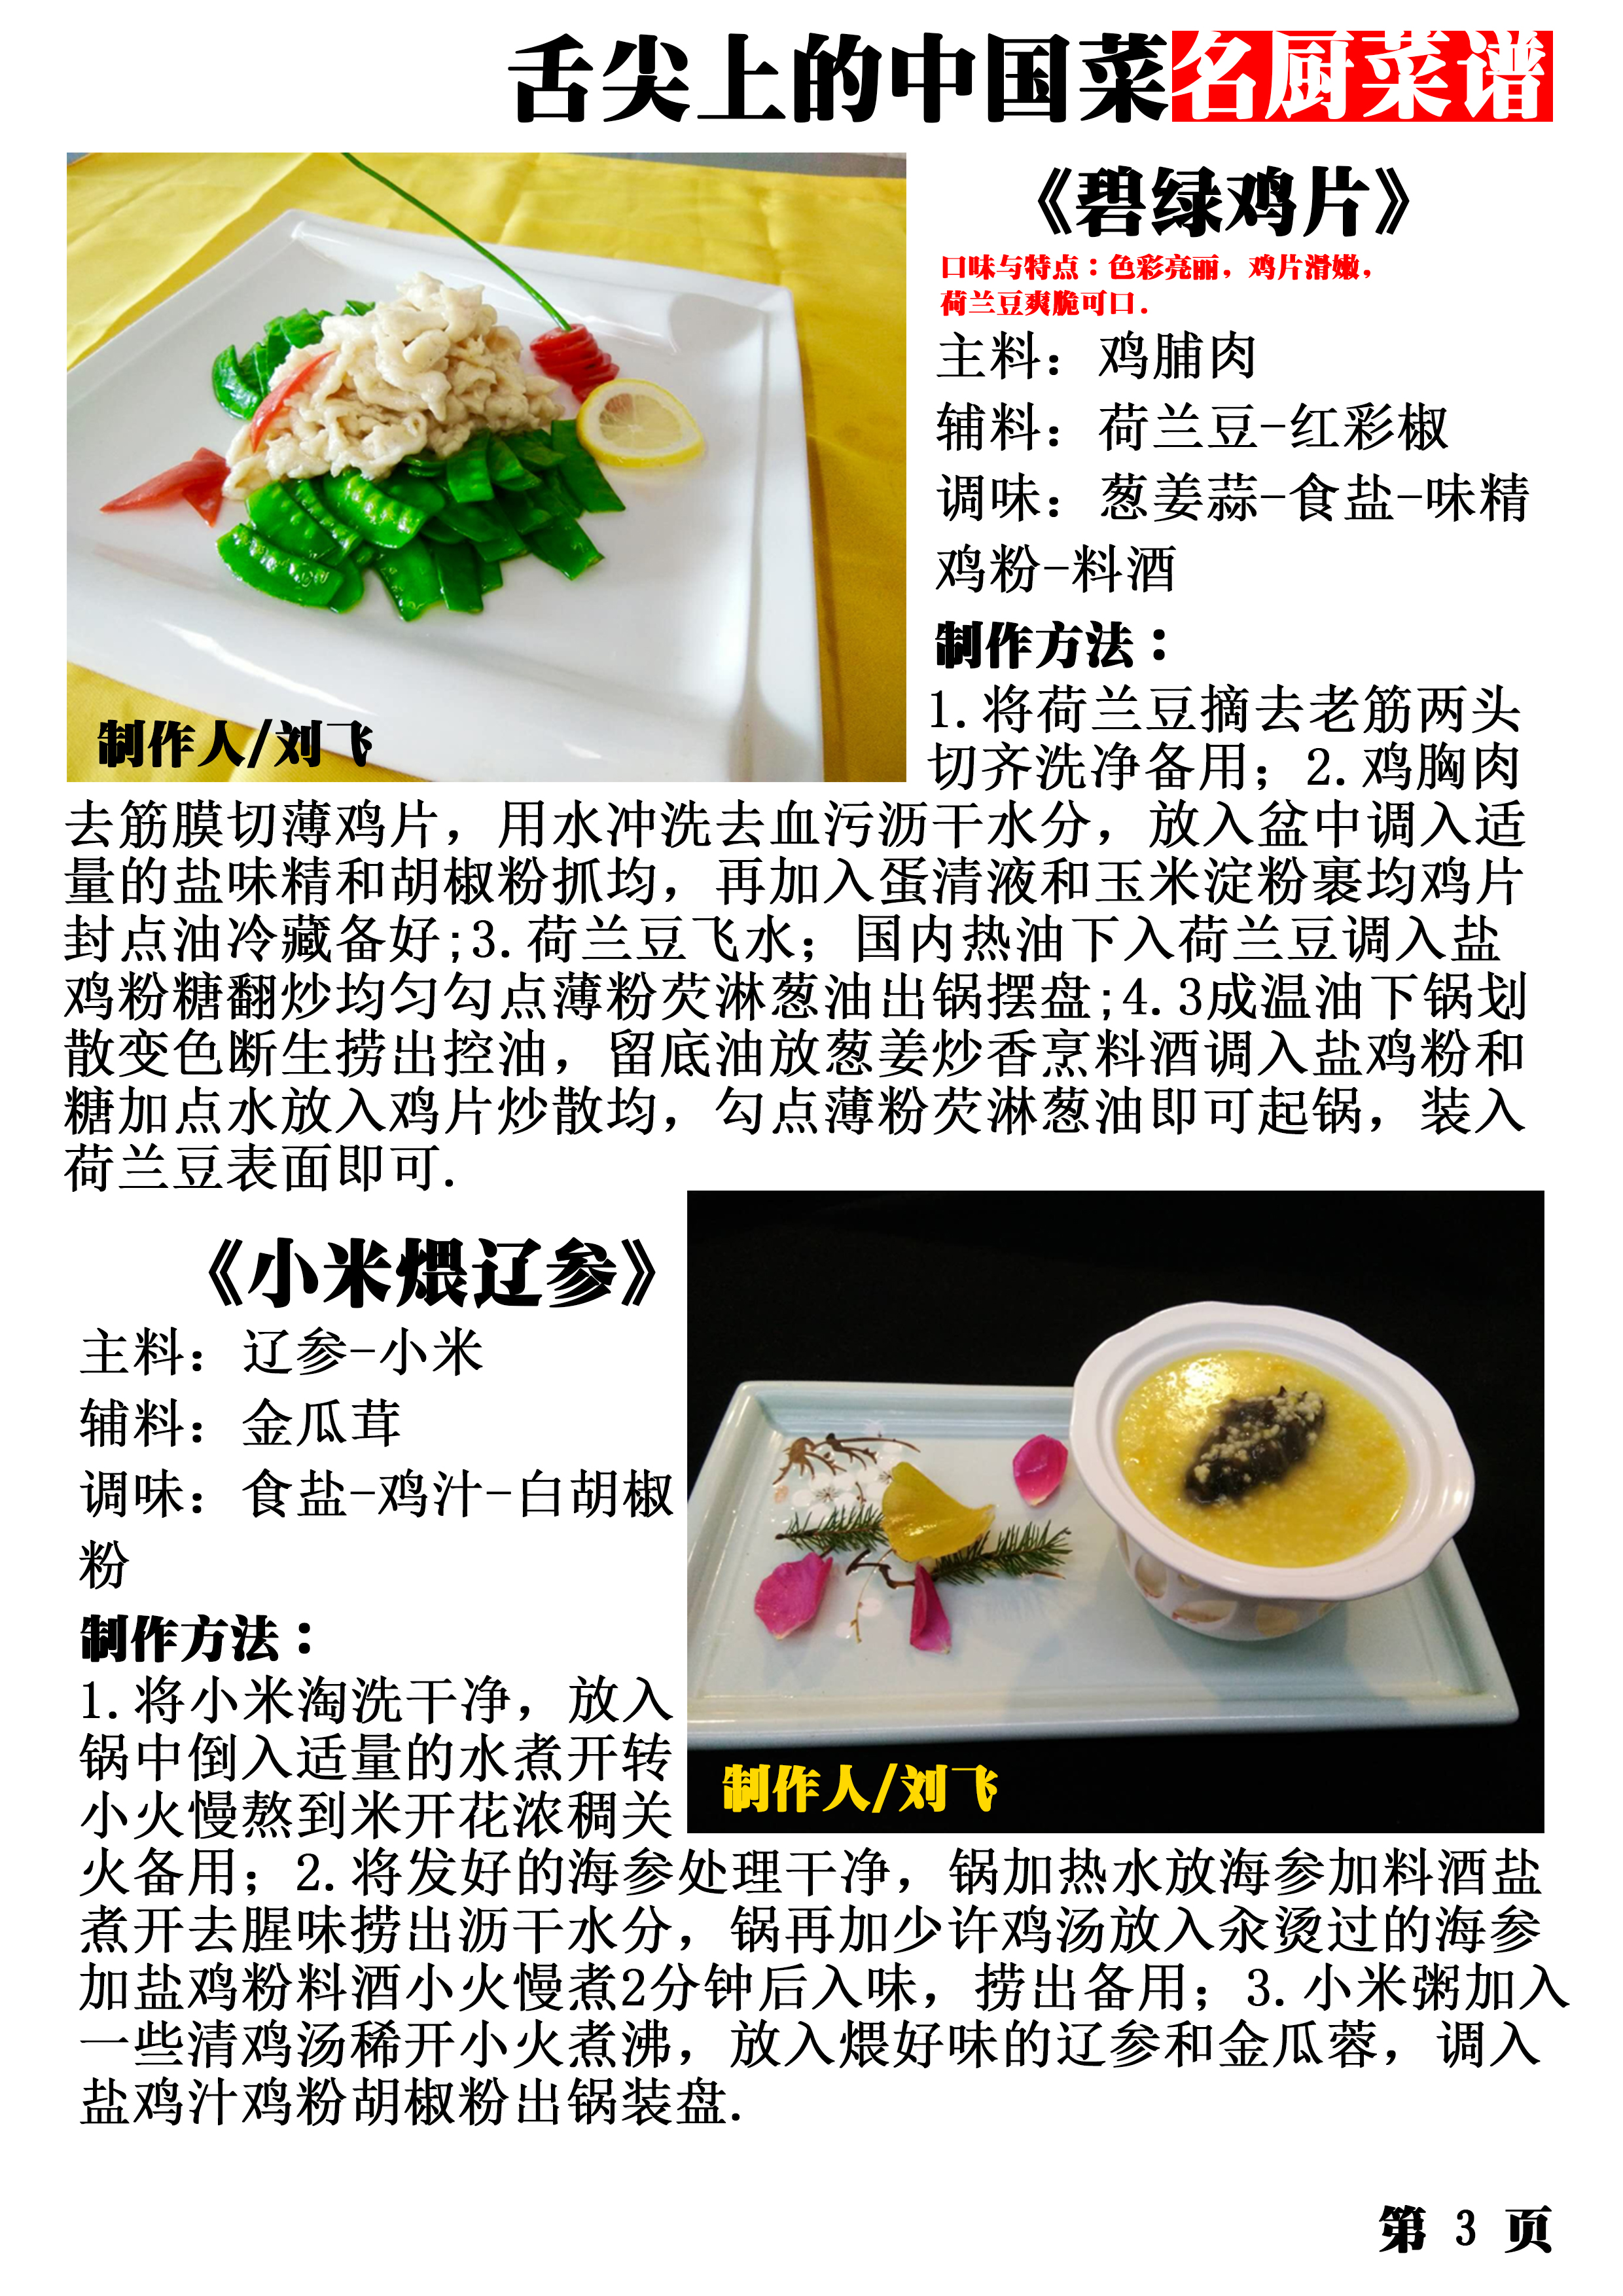 中华美食专栏《舌尖上的中国菜》名厨菜谱